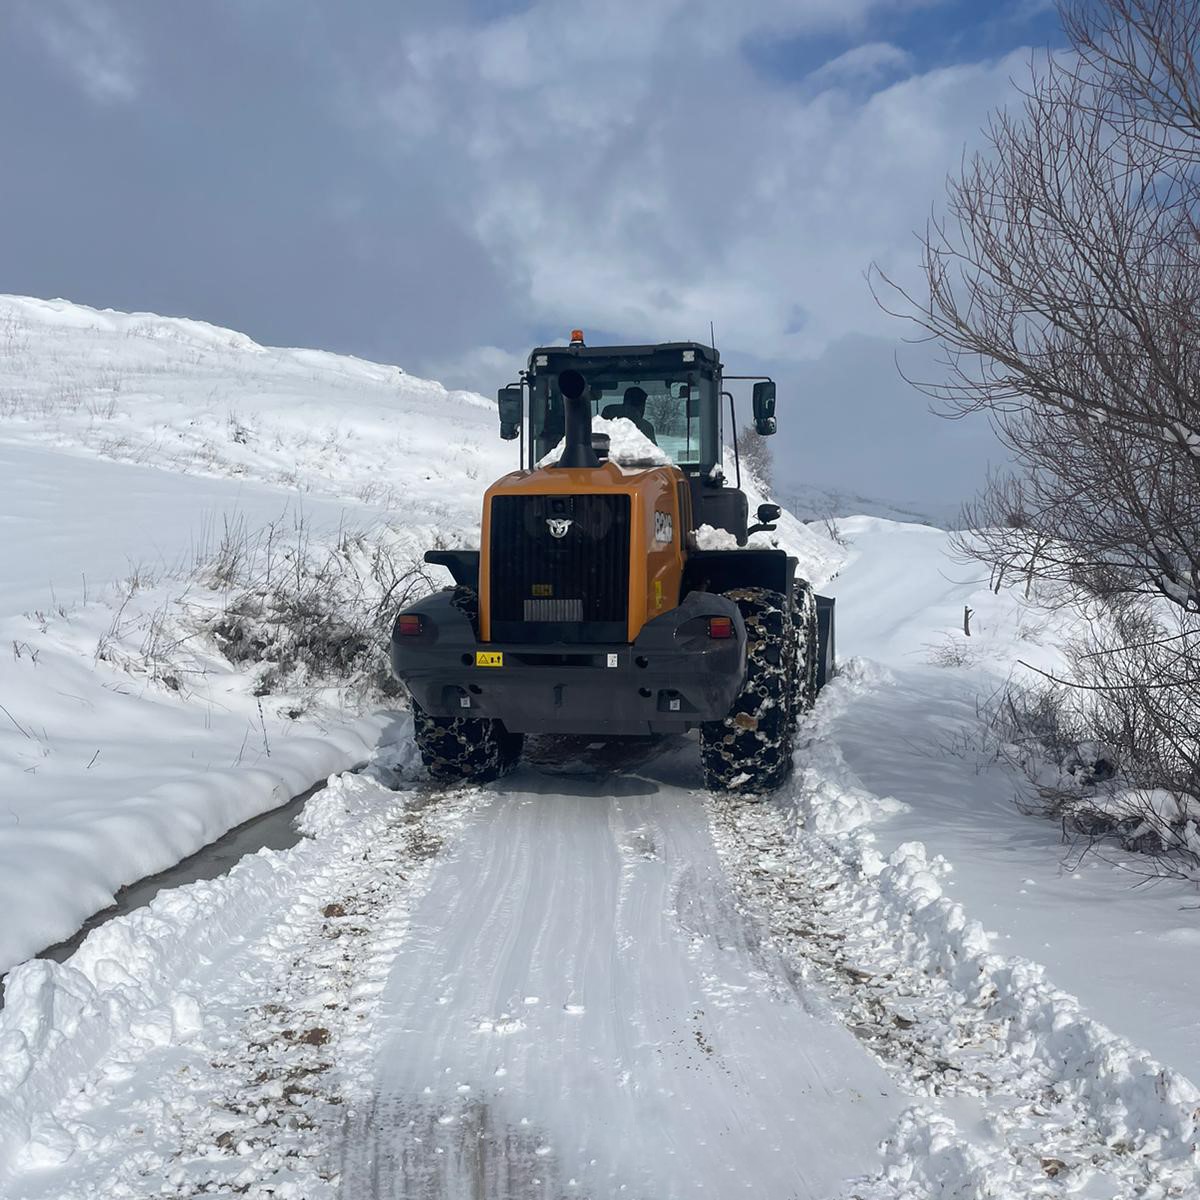 Diyarbakirda Kardan Kapanan 474 Kilometre Yol Ulasima Acildi 2 Pmr9Oedb